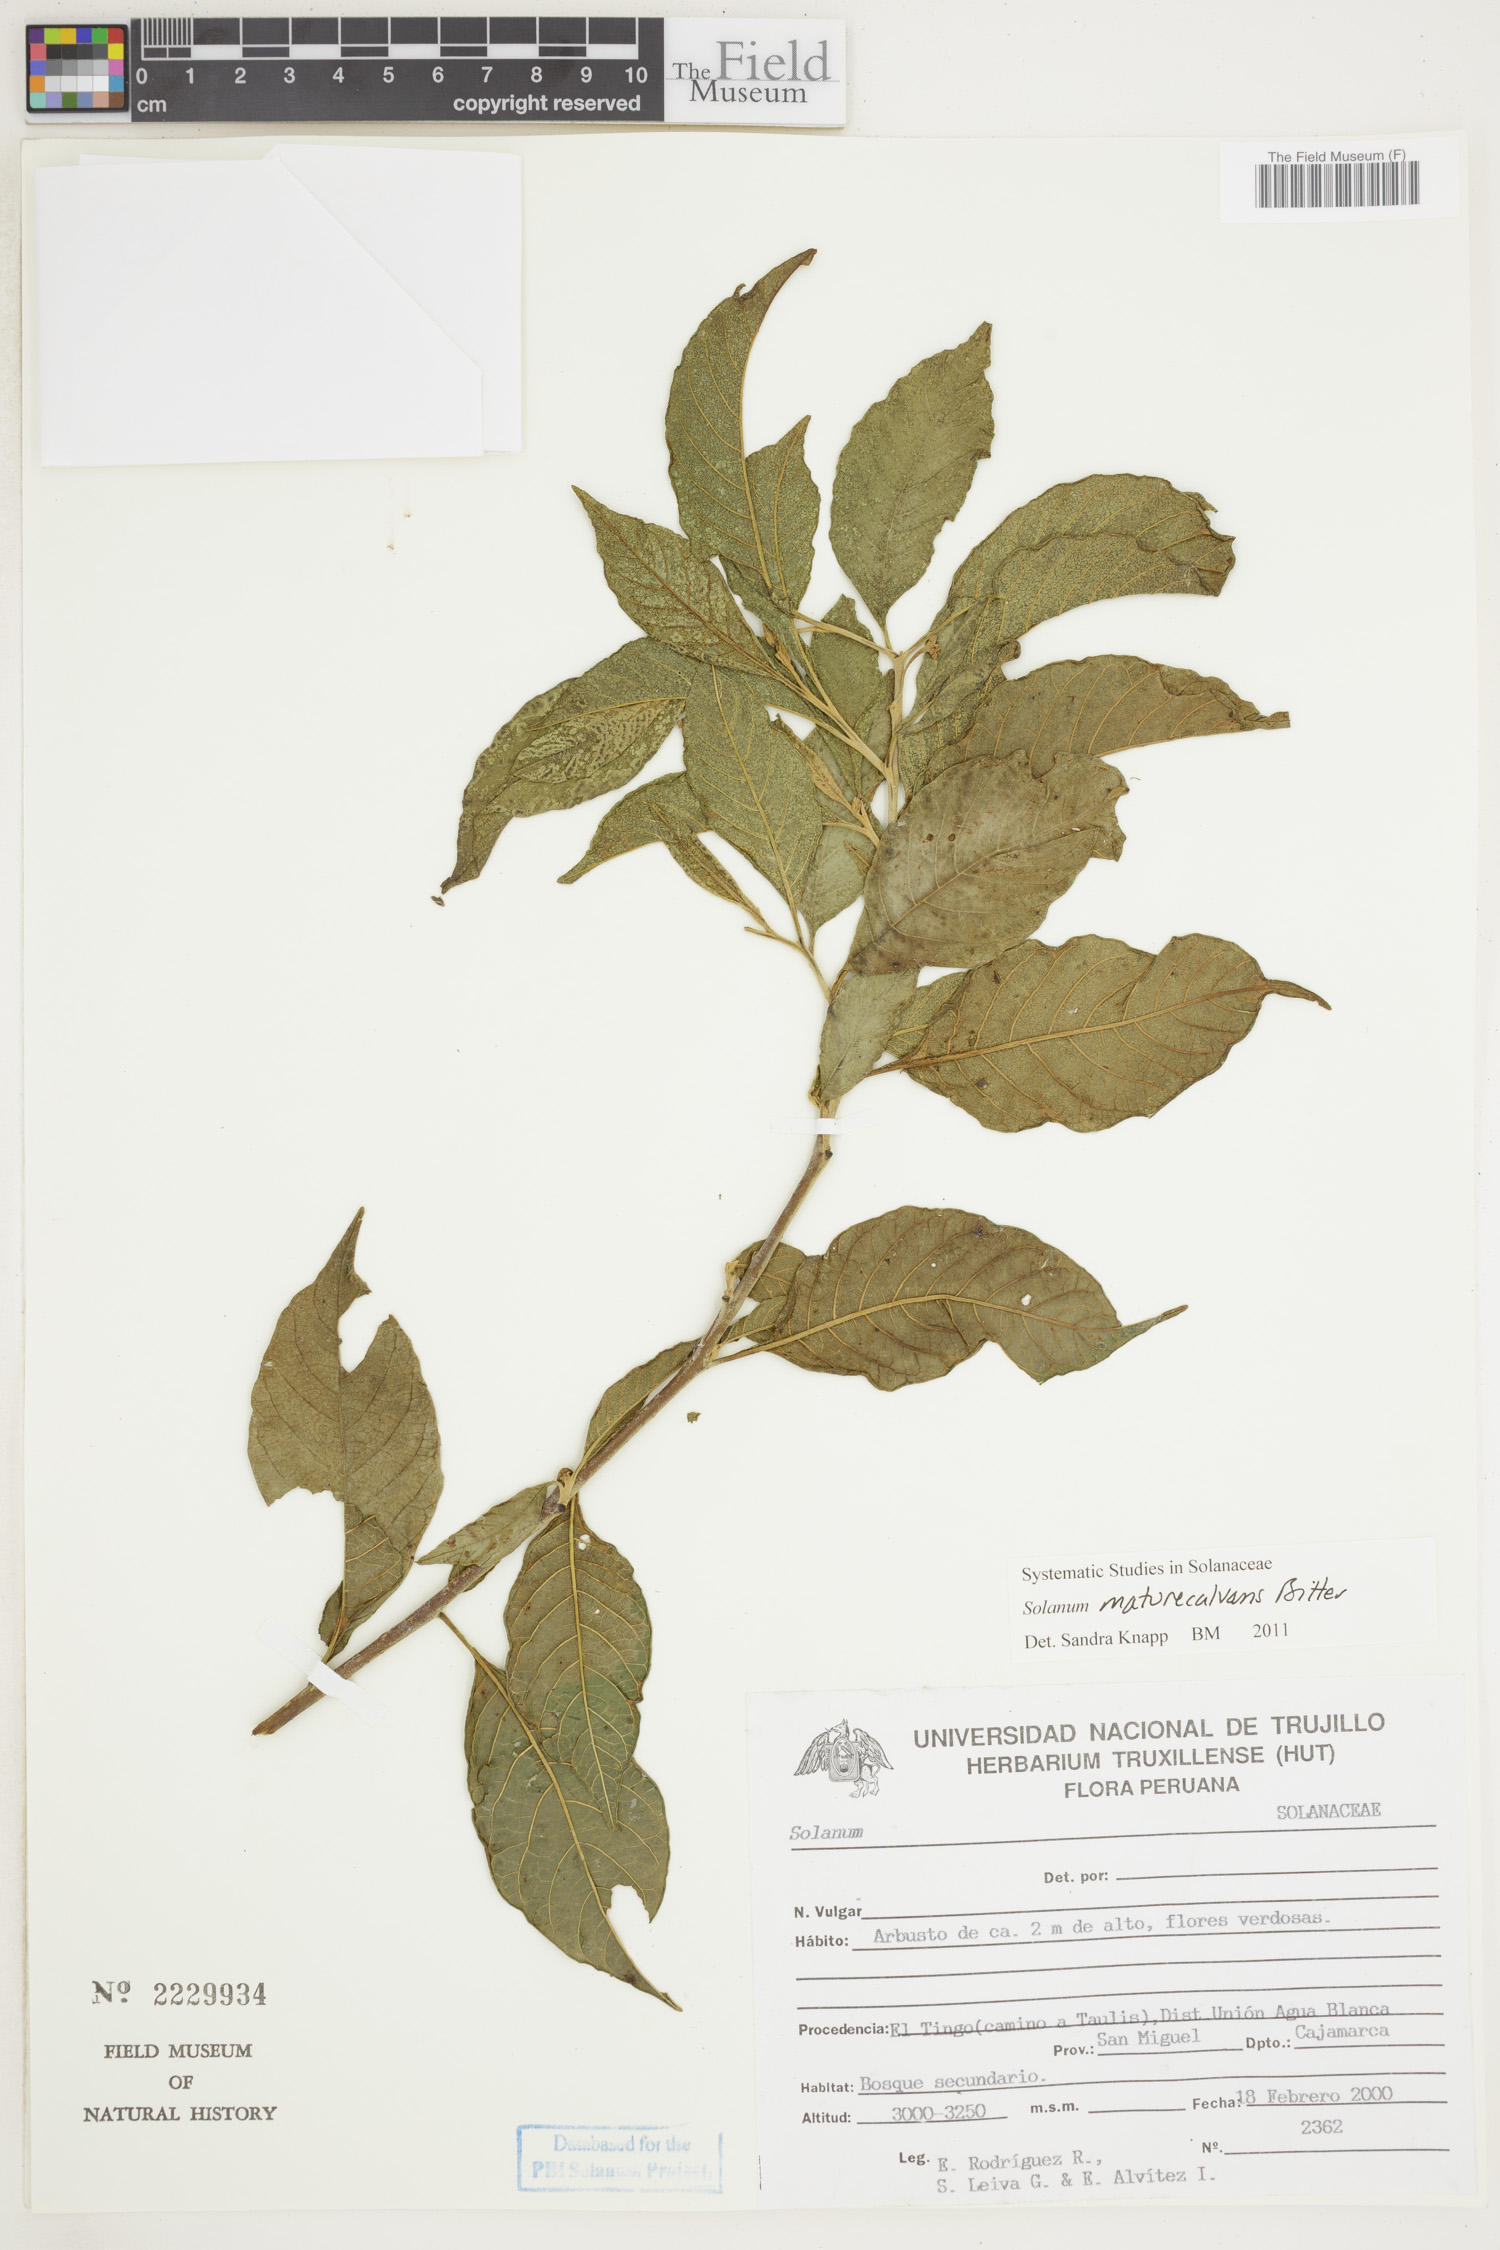 Solanum maturecalvans image